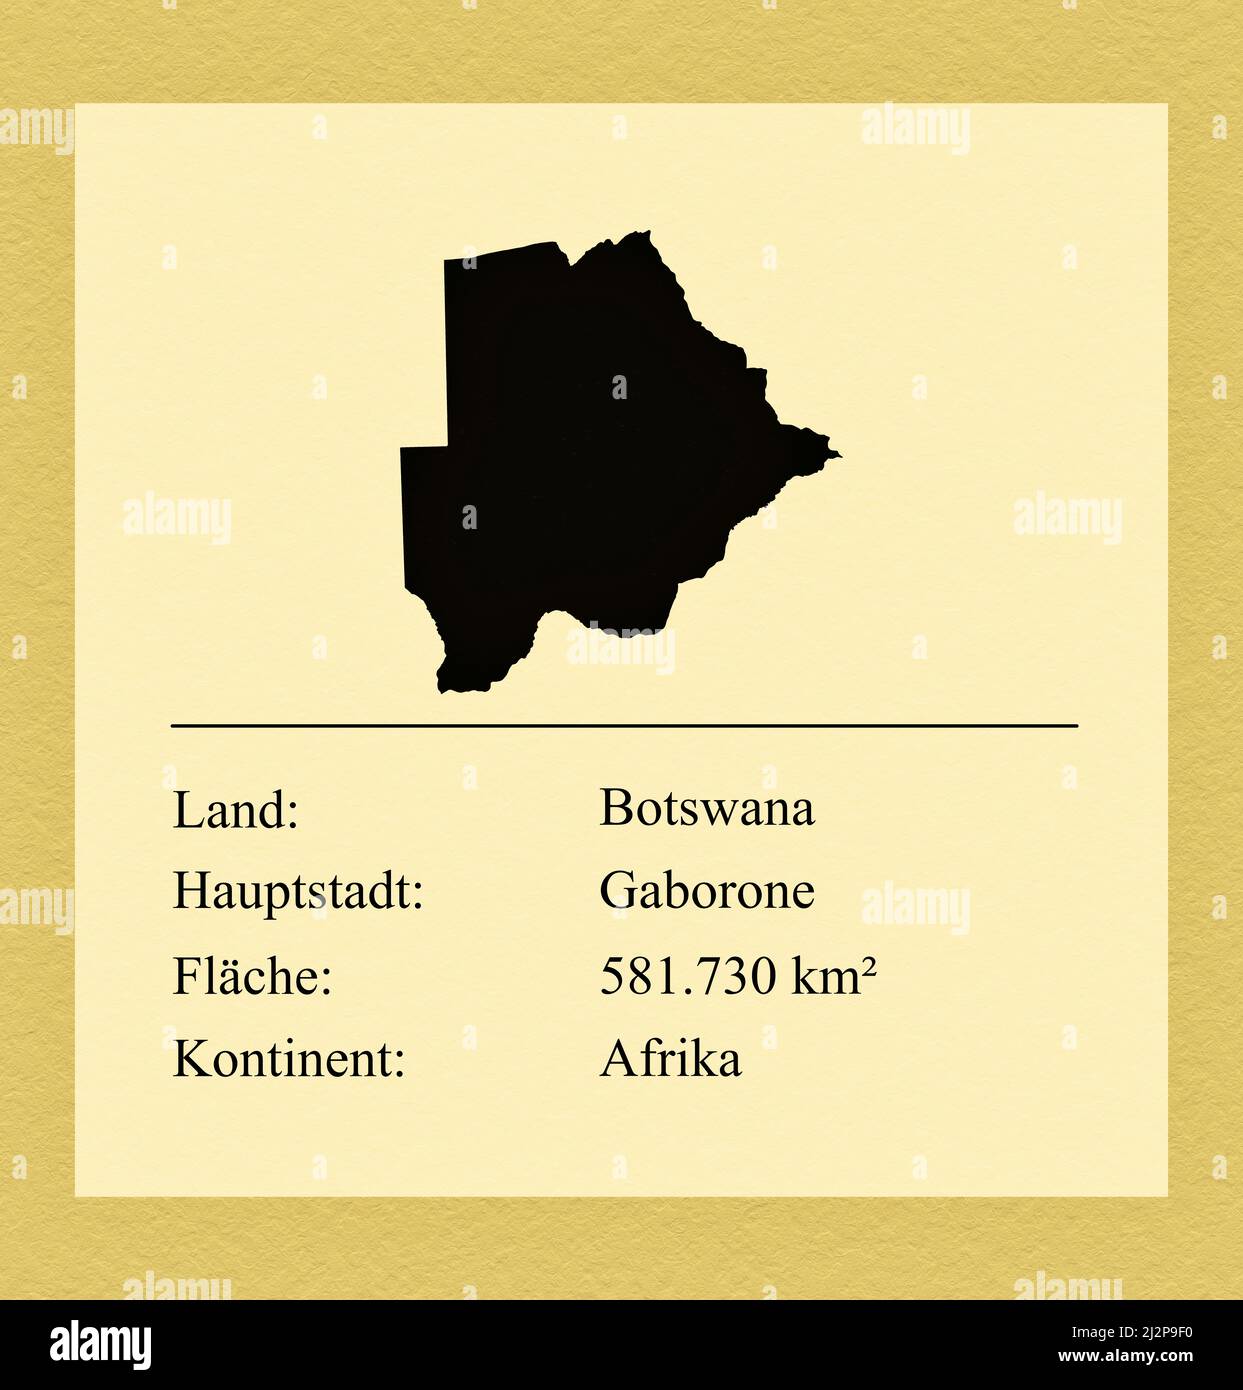 Umrisse des Landes Botswana, darunter ein kleiner Steckbrief mit Ländernamen, Hauptstadt, Fläche und Kontinent Stock Photo